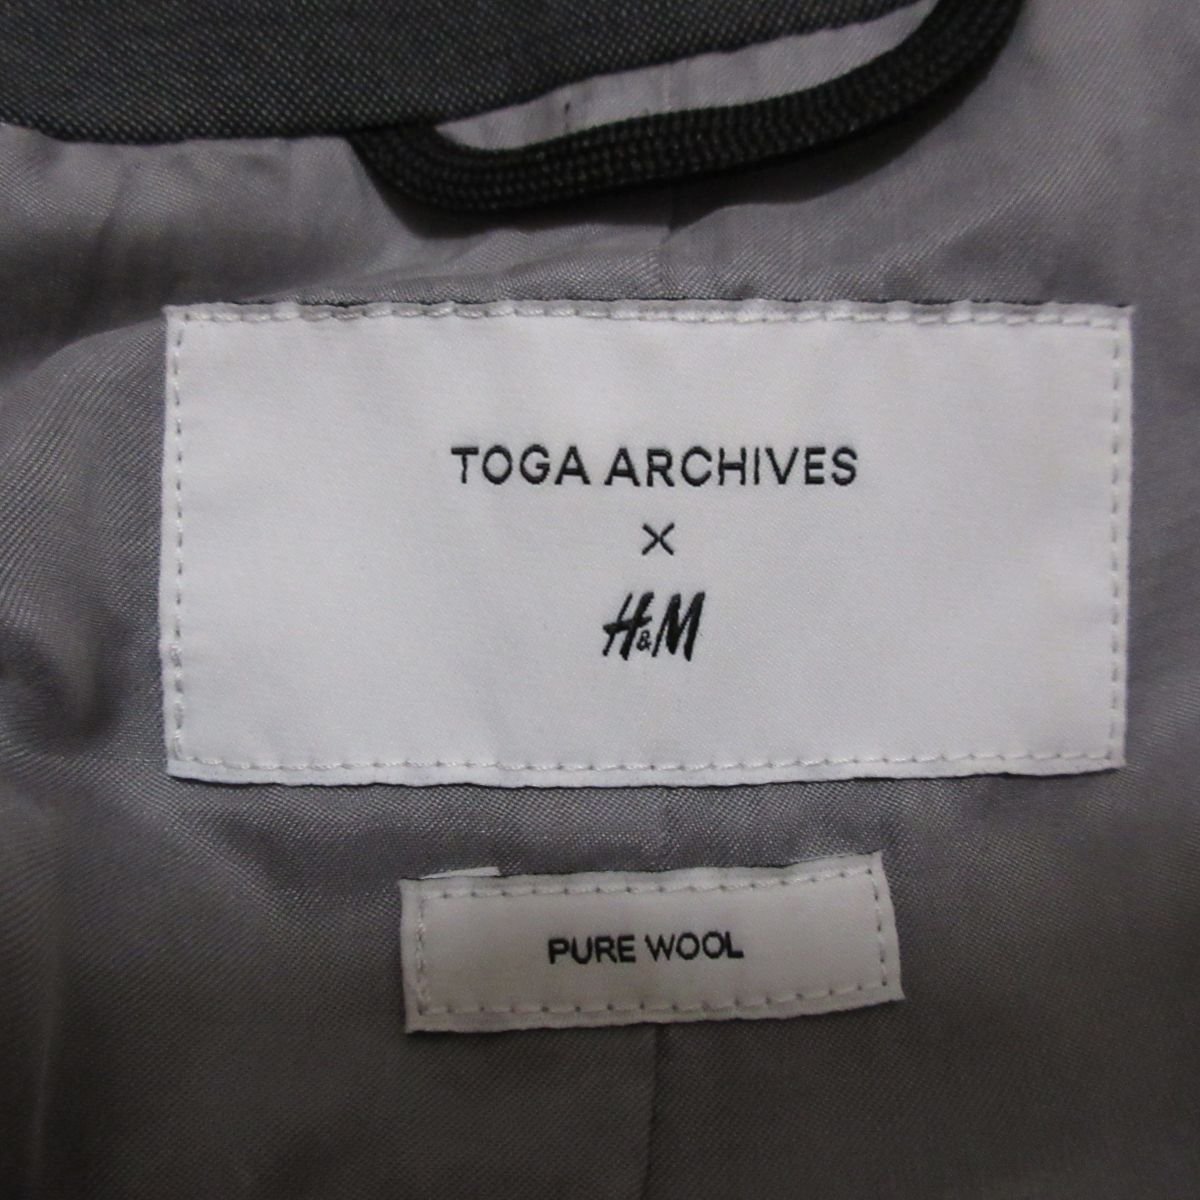  прекрасный товар 21AW TOGA ARCHIVES x H&M Toga архив s бисер оборудование орнамент двойной breast ремень ti зеленовато-голубой жакет блейзер S серый 